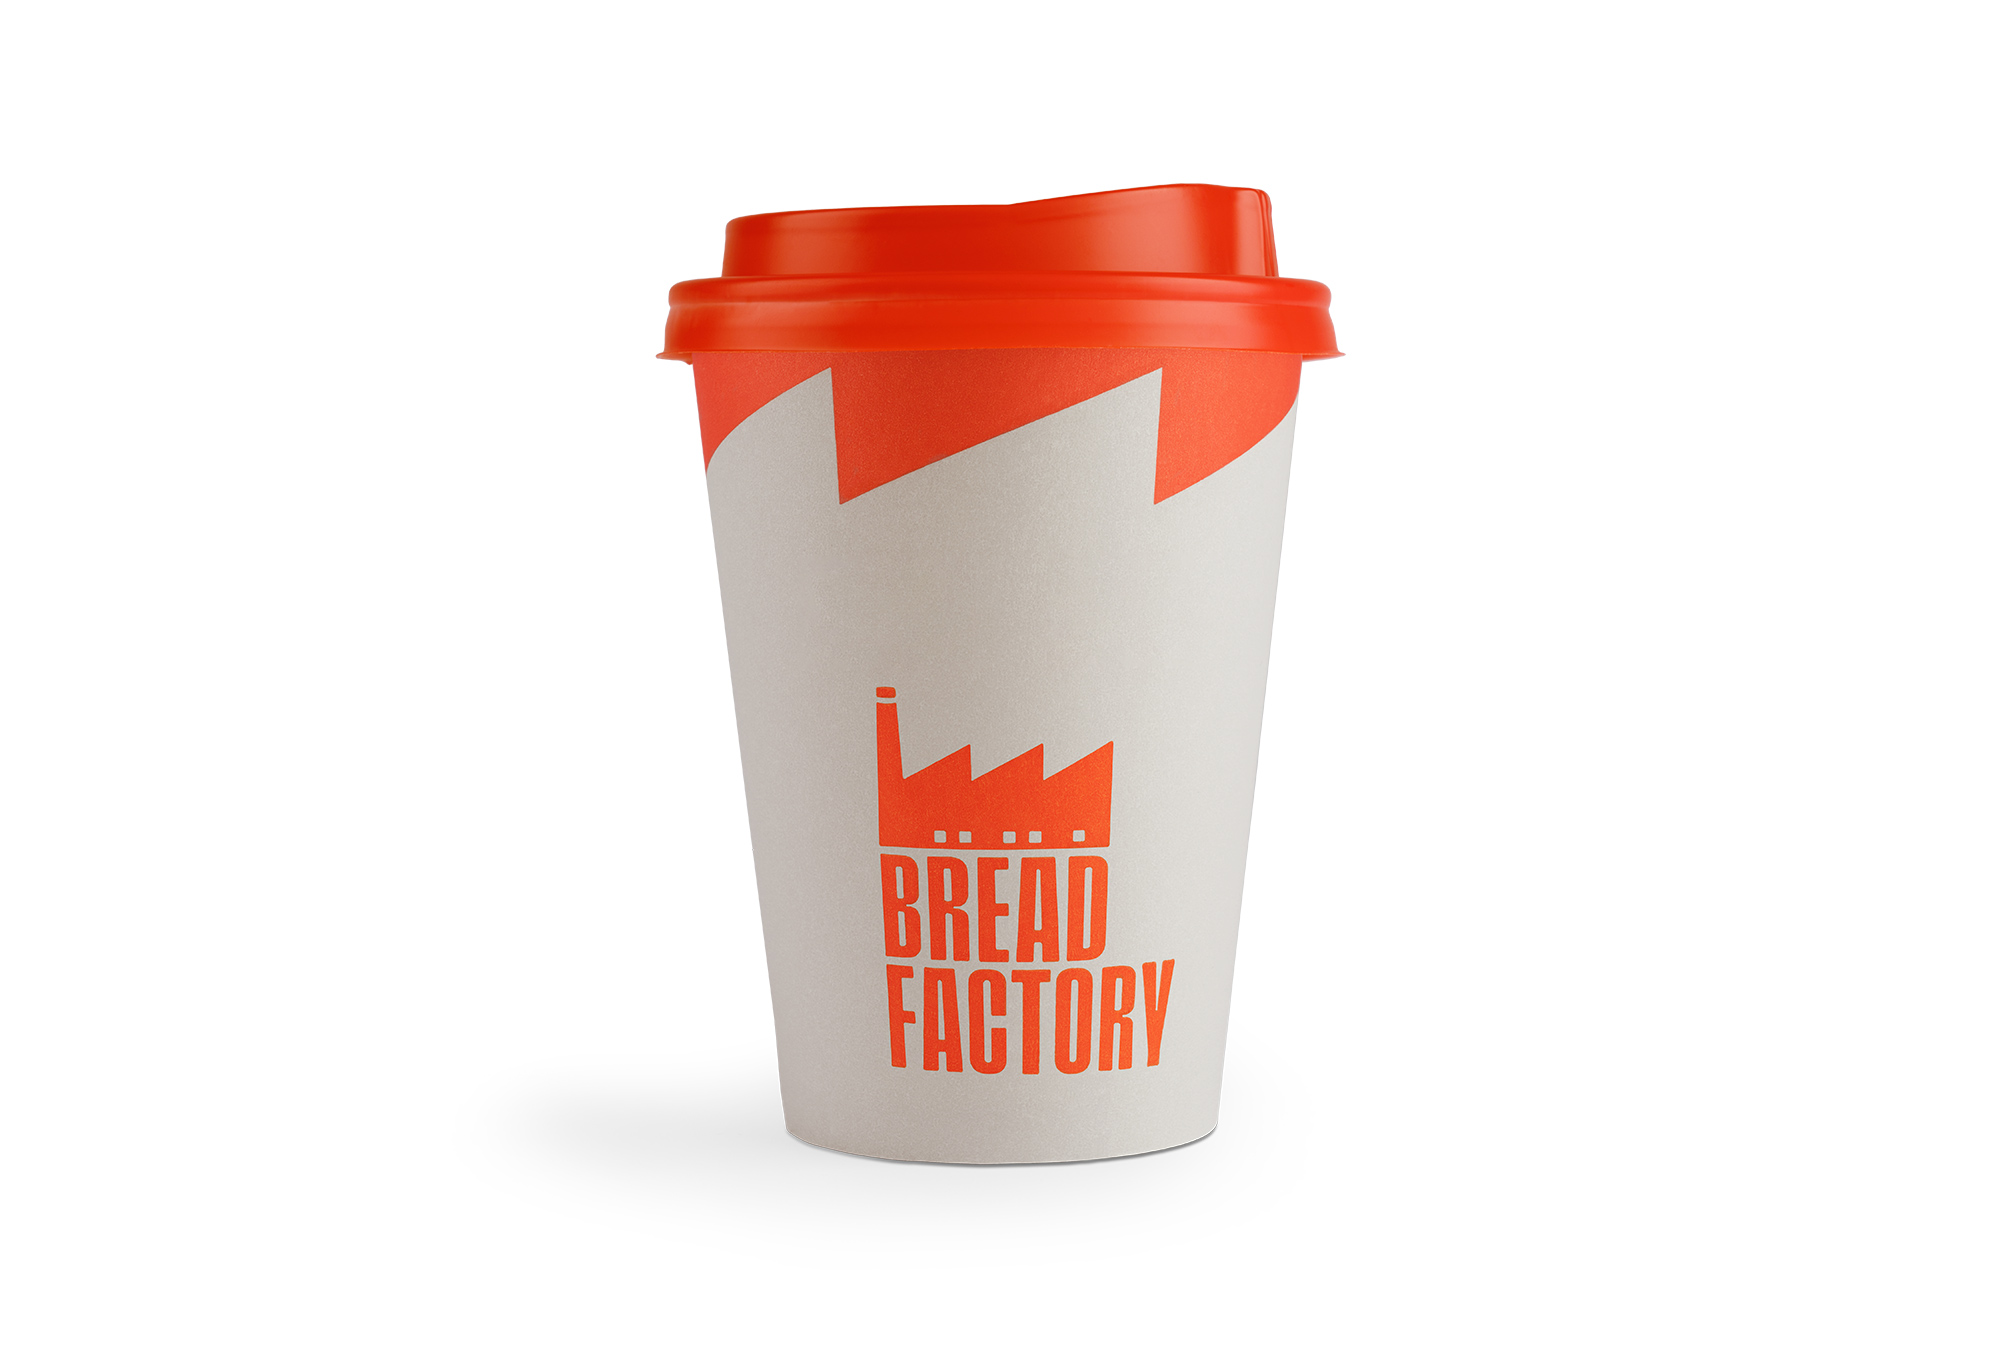 Luminous Design Group Recreates Bread Factory’s Logo in Redesign